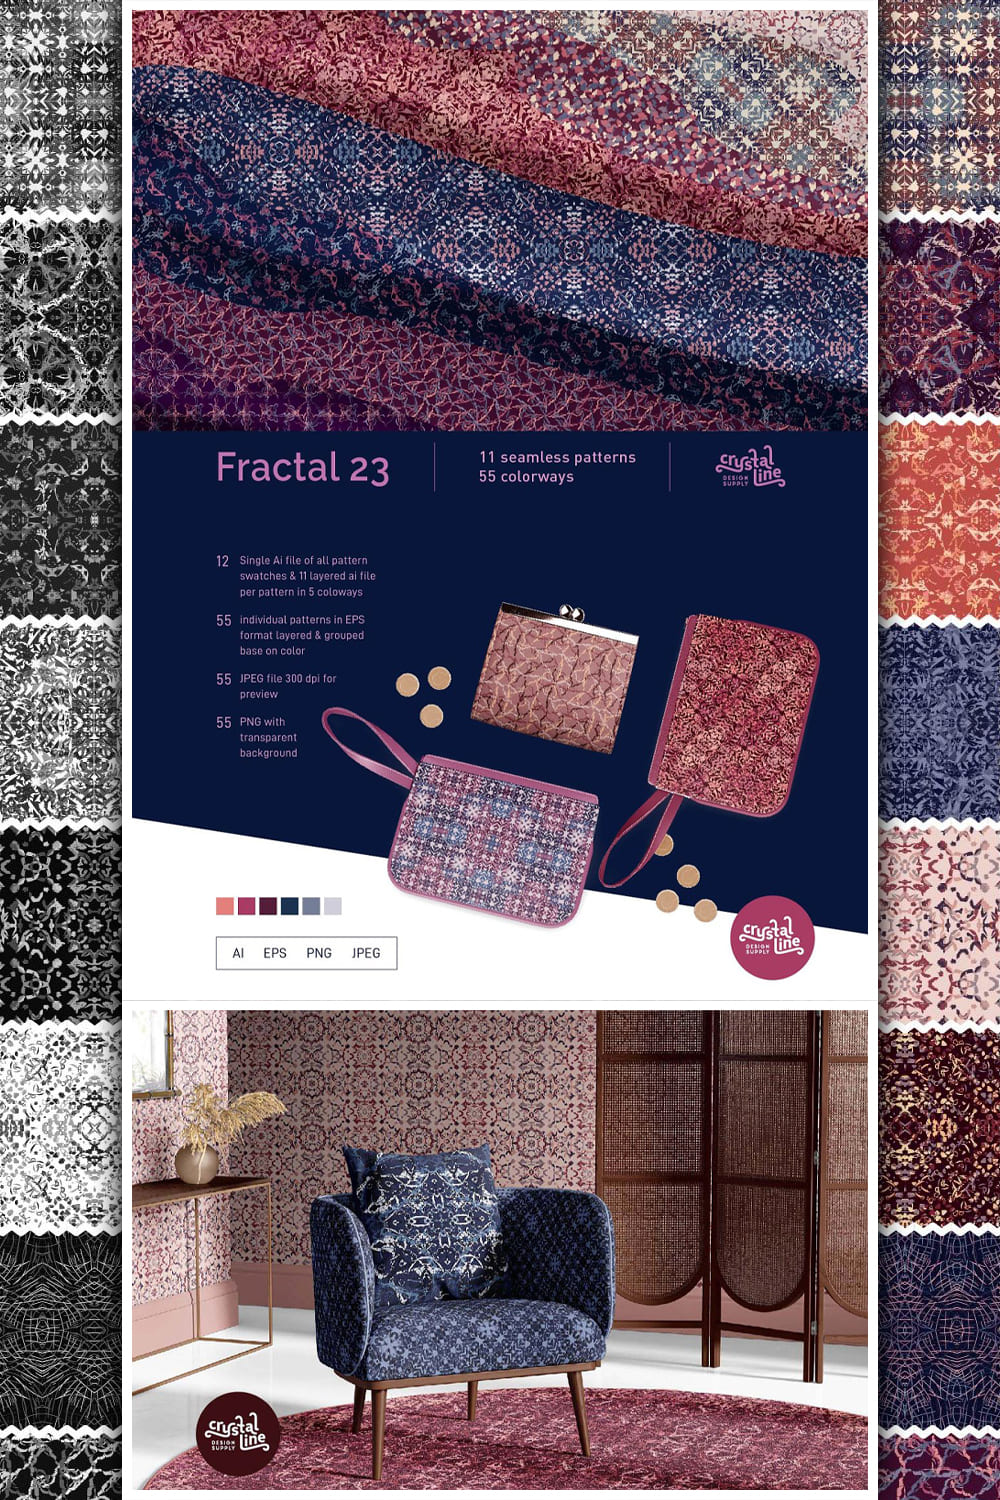 Fractal Patterns 23 pinterest image.